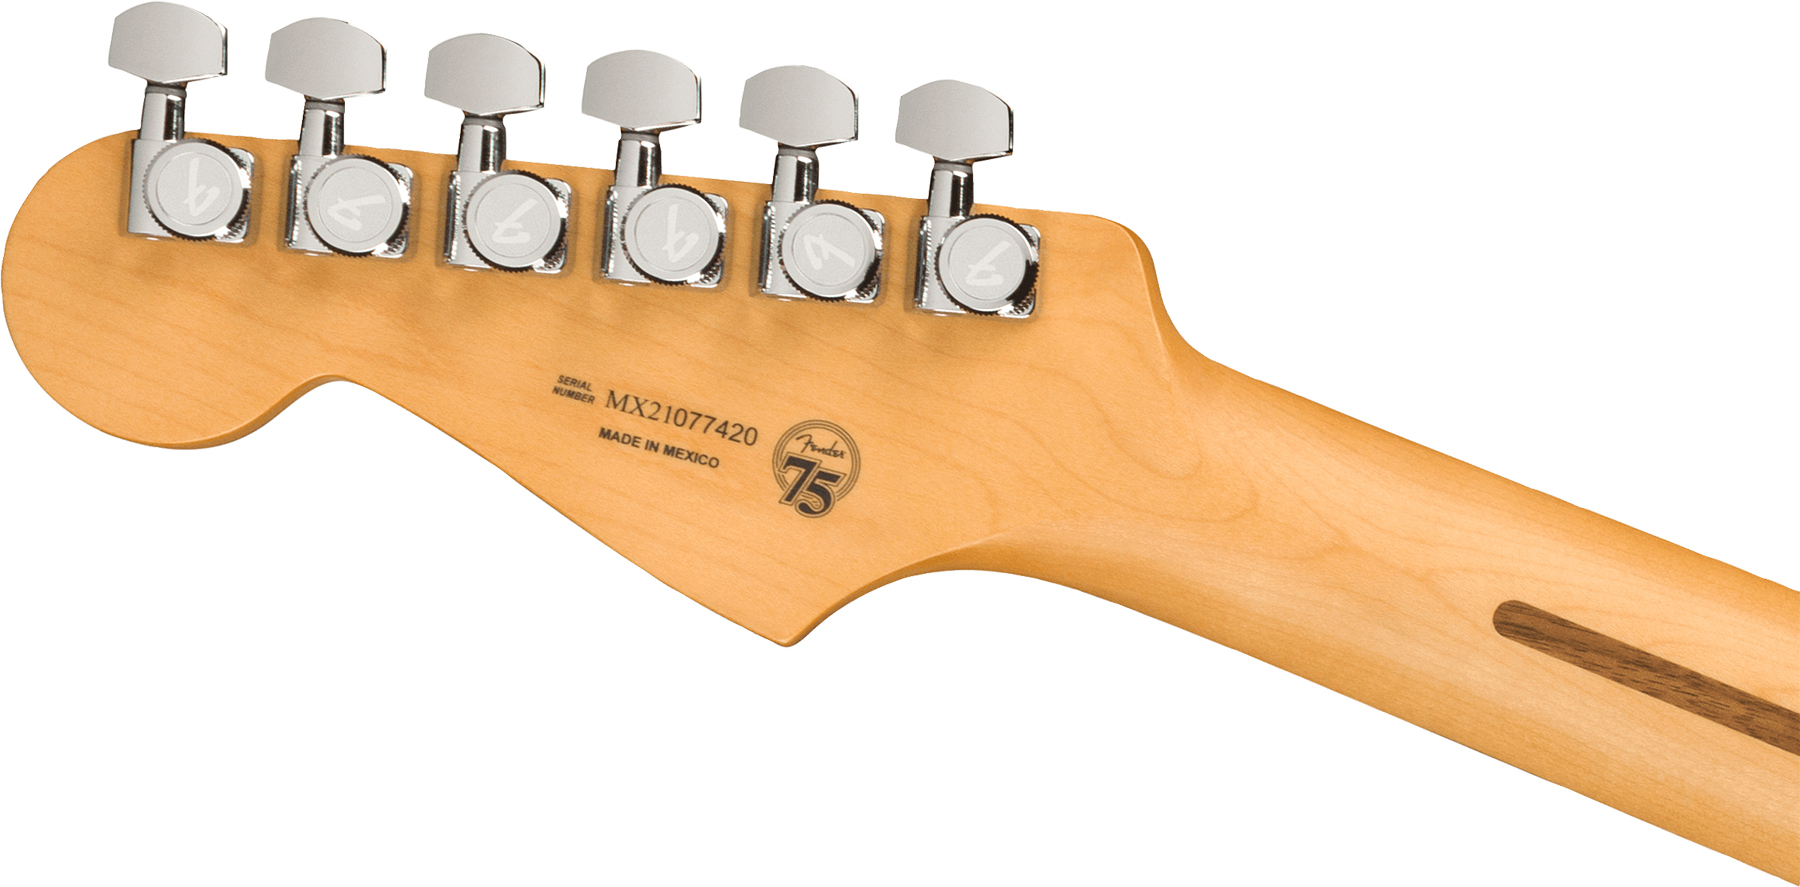 Fender Strat Player Plus Mex Hss Trem Pf - Silverburst - Guitare Électrique Forme Str - Variation 3